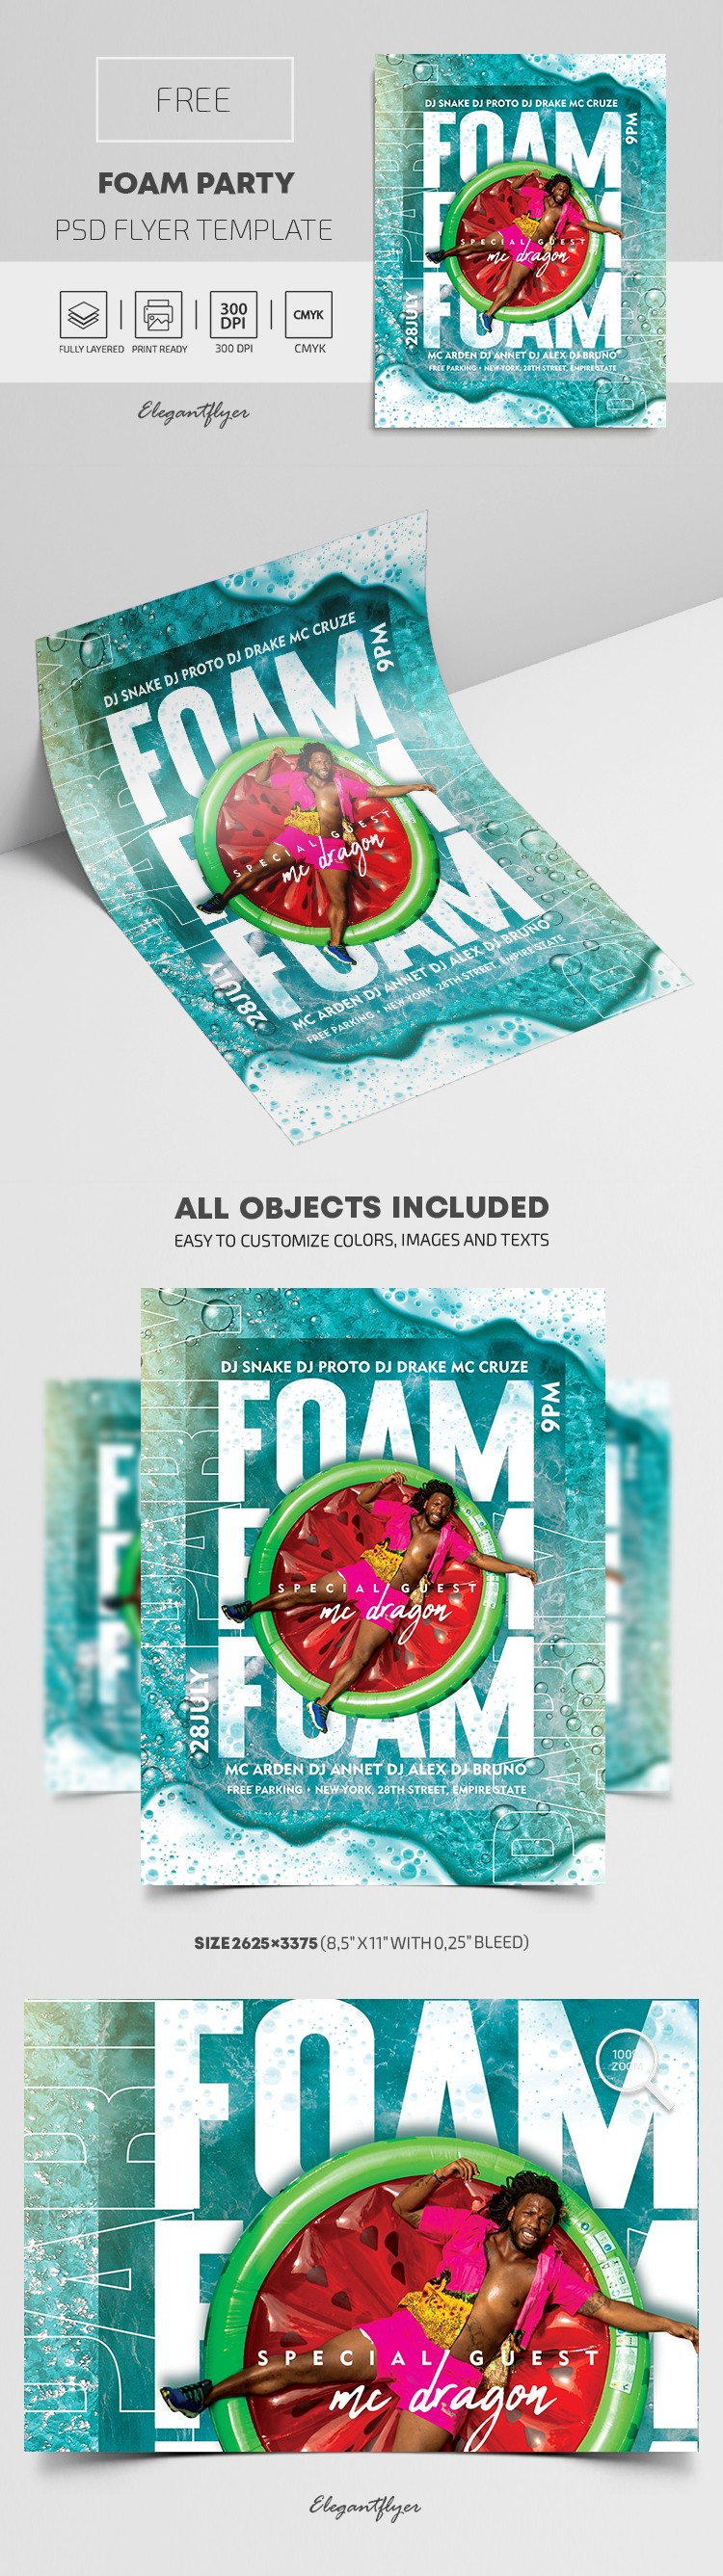 Foam Party Flyer by ElegantFlyer